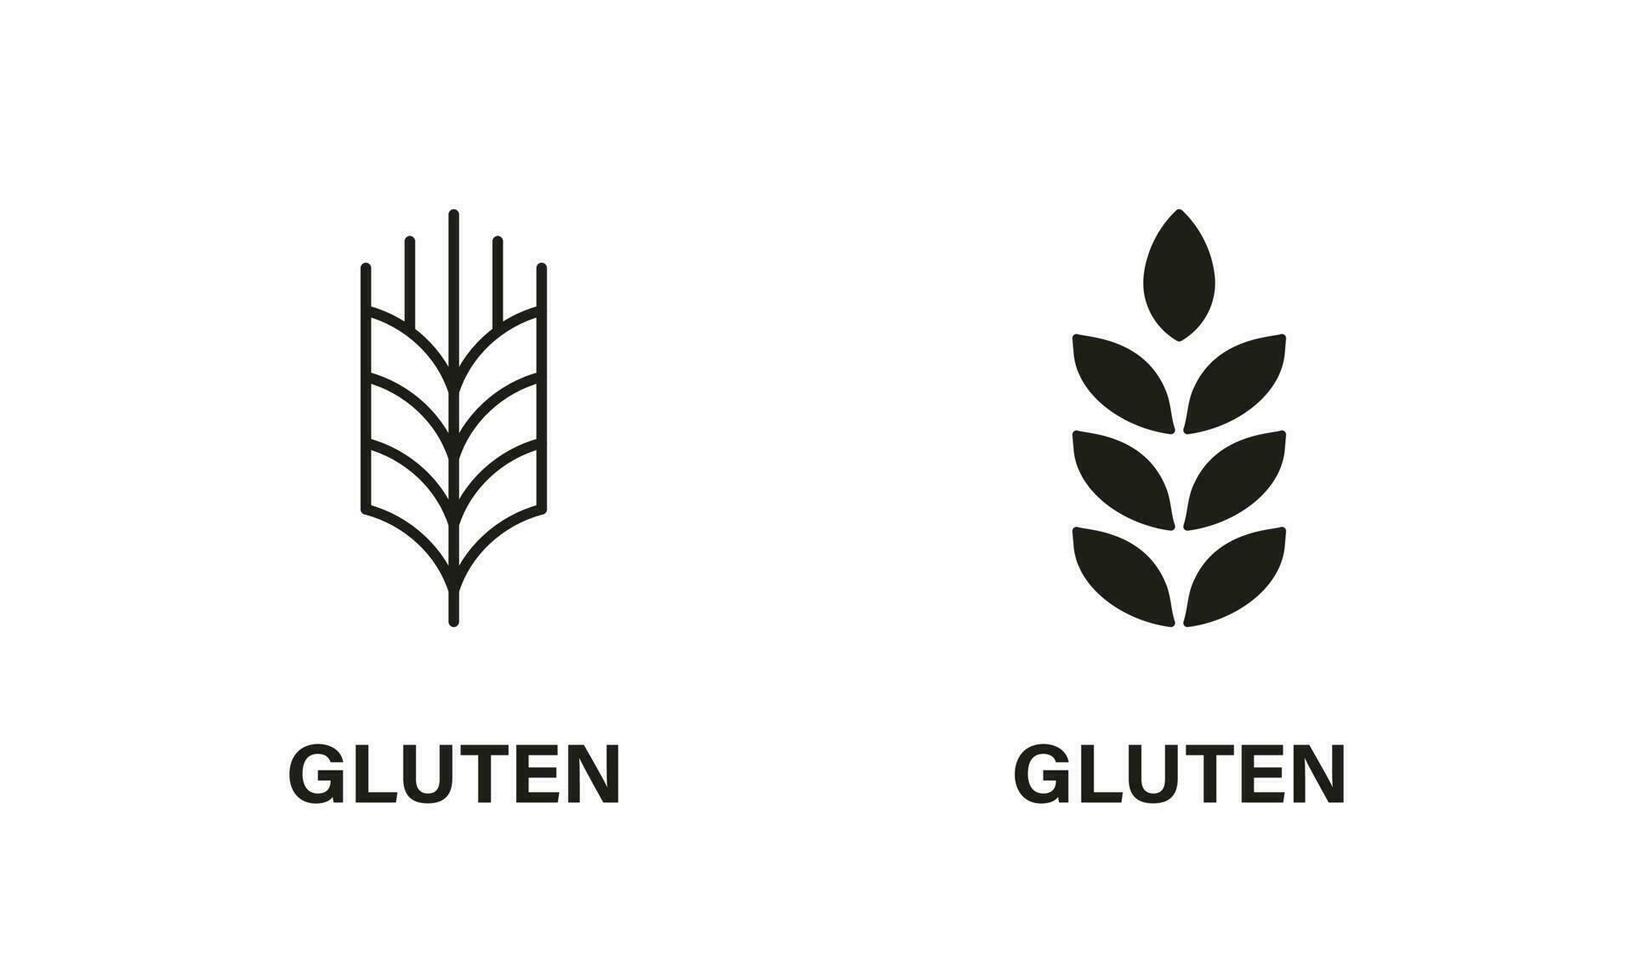 gluten ingrediënten lijn en silhouet icoon set. tarwe allergie Product zwart pictogram. biologisch ontbijtgranen zaad symbool verzameling Aan wit achtergrond. geïsoleerd vector illustratie.